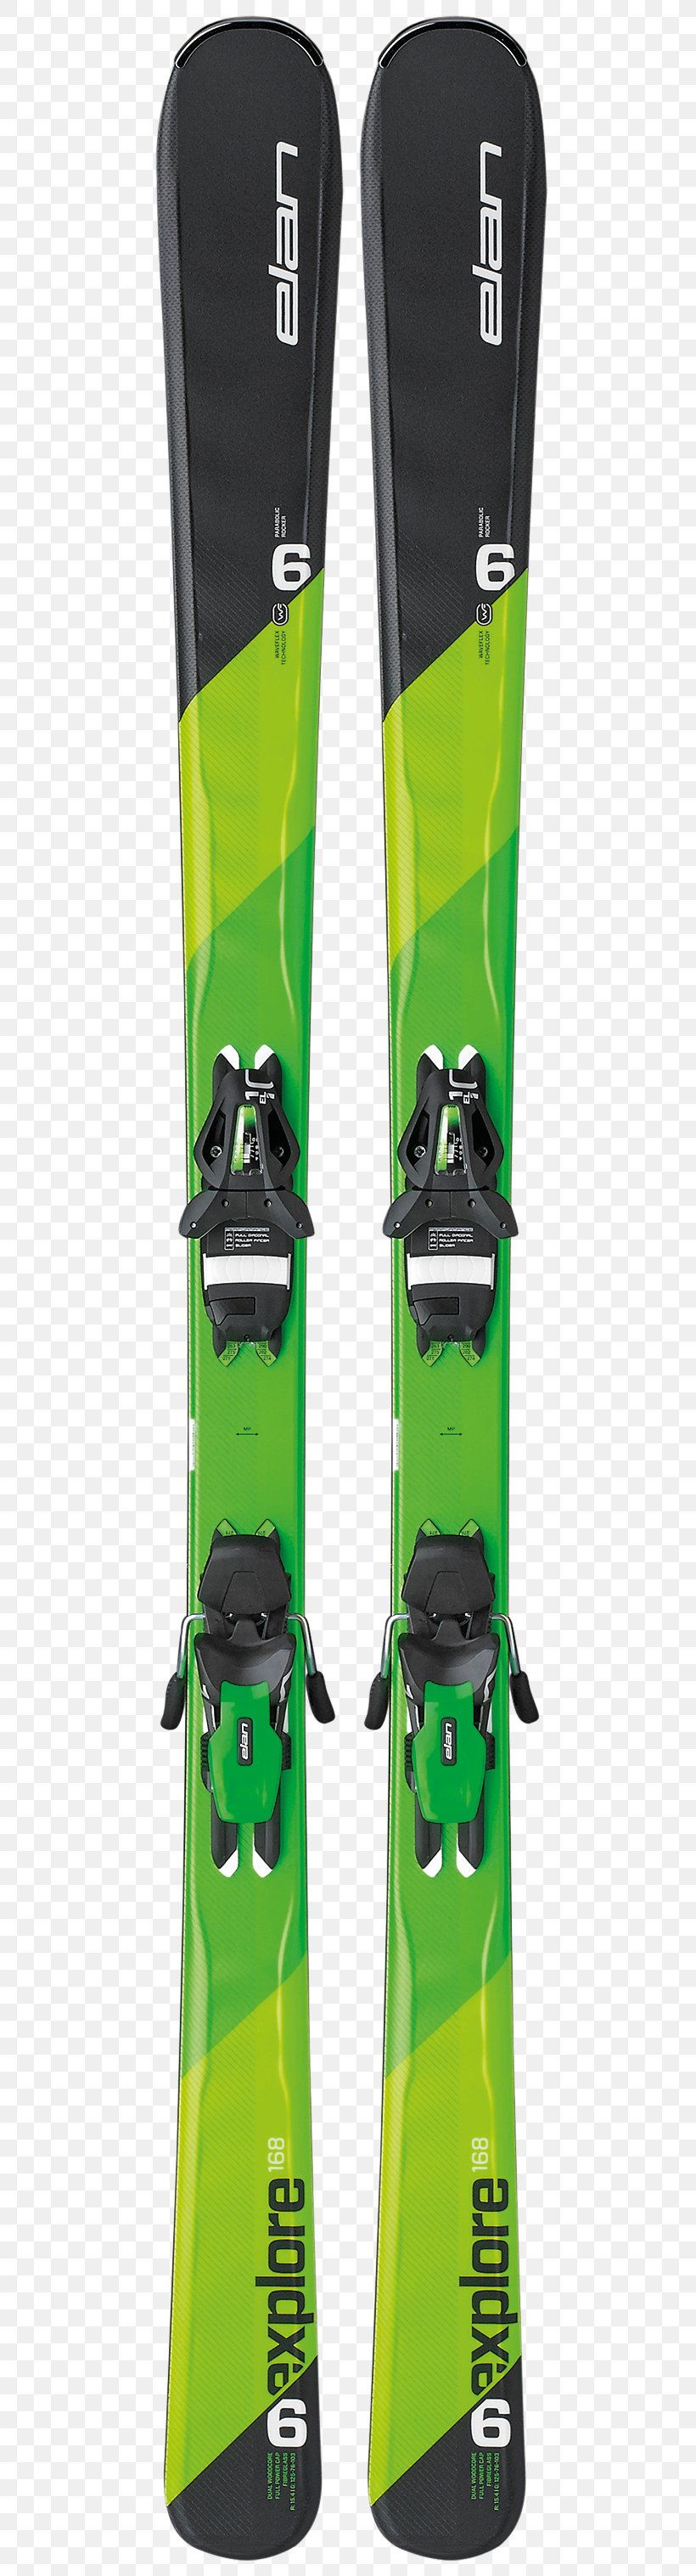 Ski Bindings Elan Alpine Skiing, PNG, 500x3034px, Ski Bindings, Alpine Ski, Alpine Skiing, Clothing, Elan Download Free